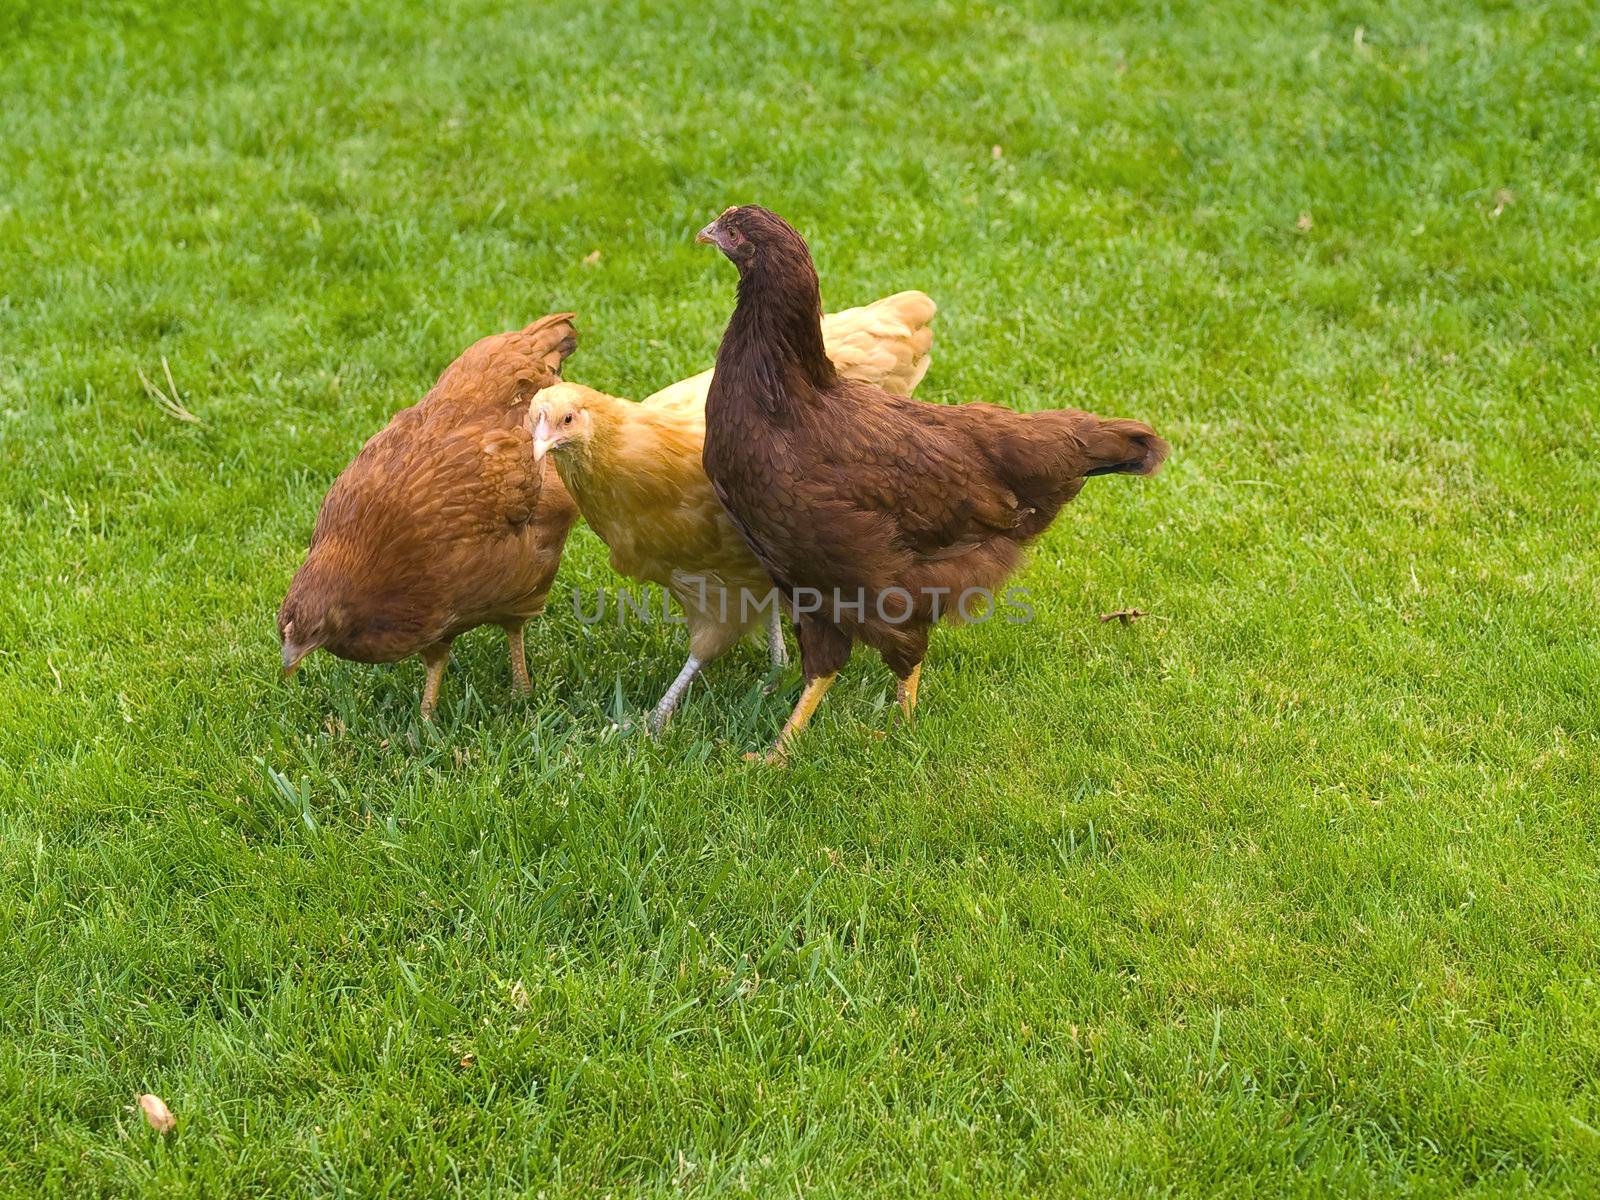 Free Range Chickens by Frankljunior